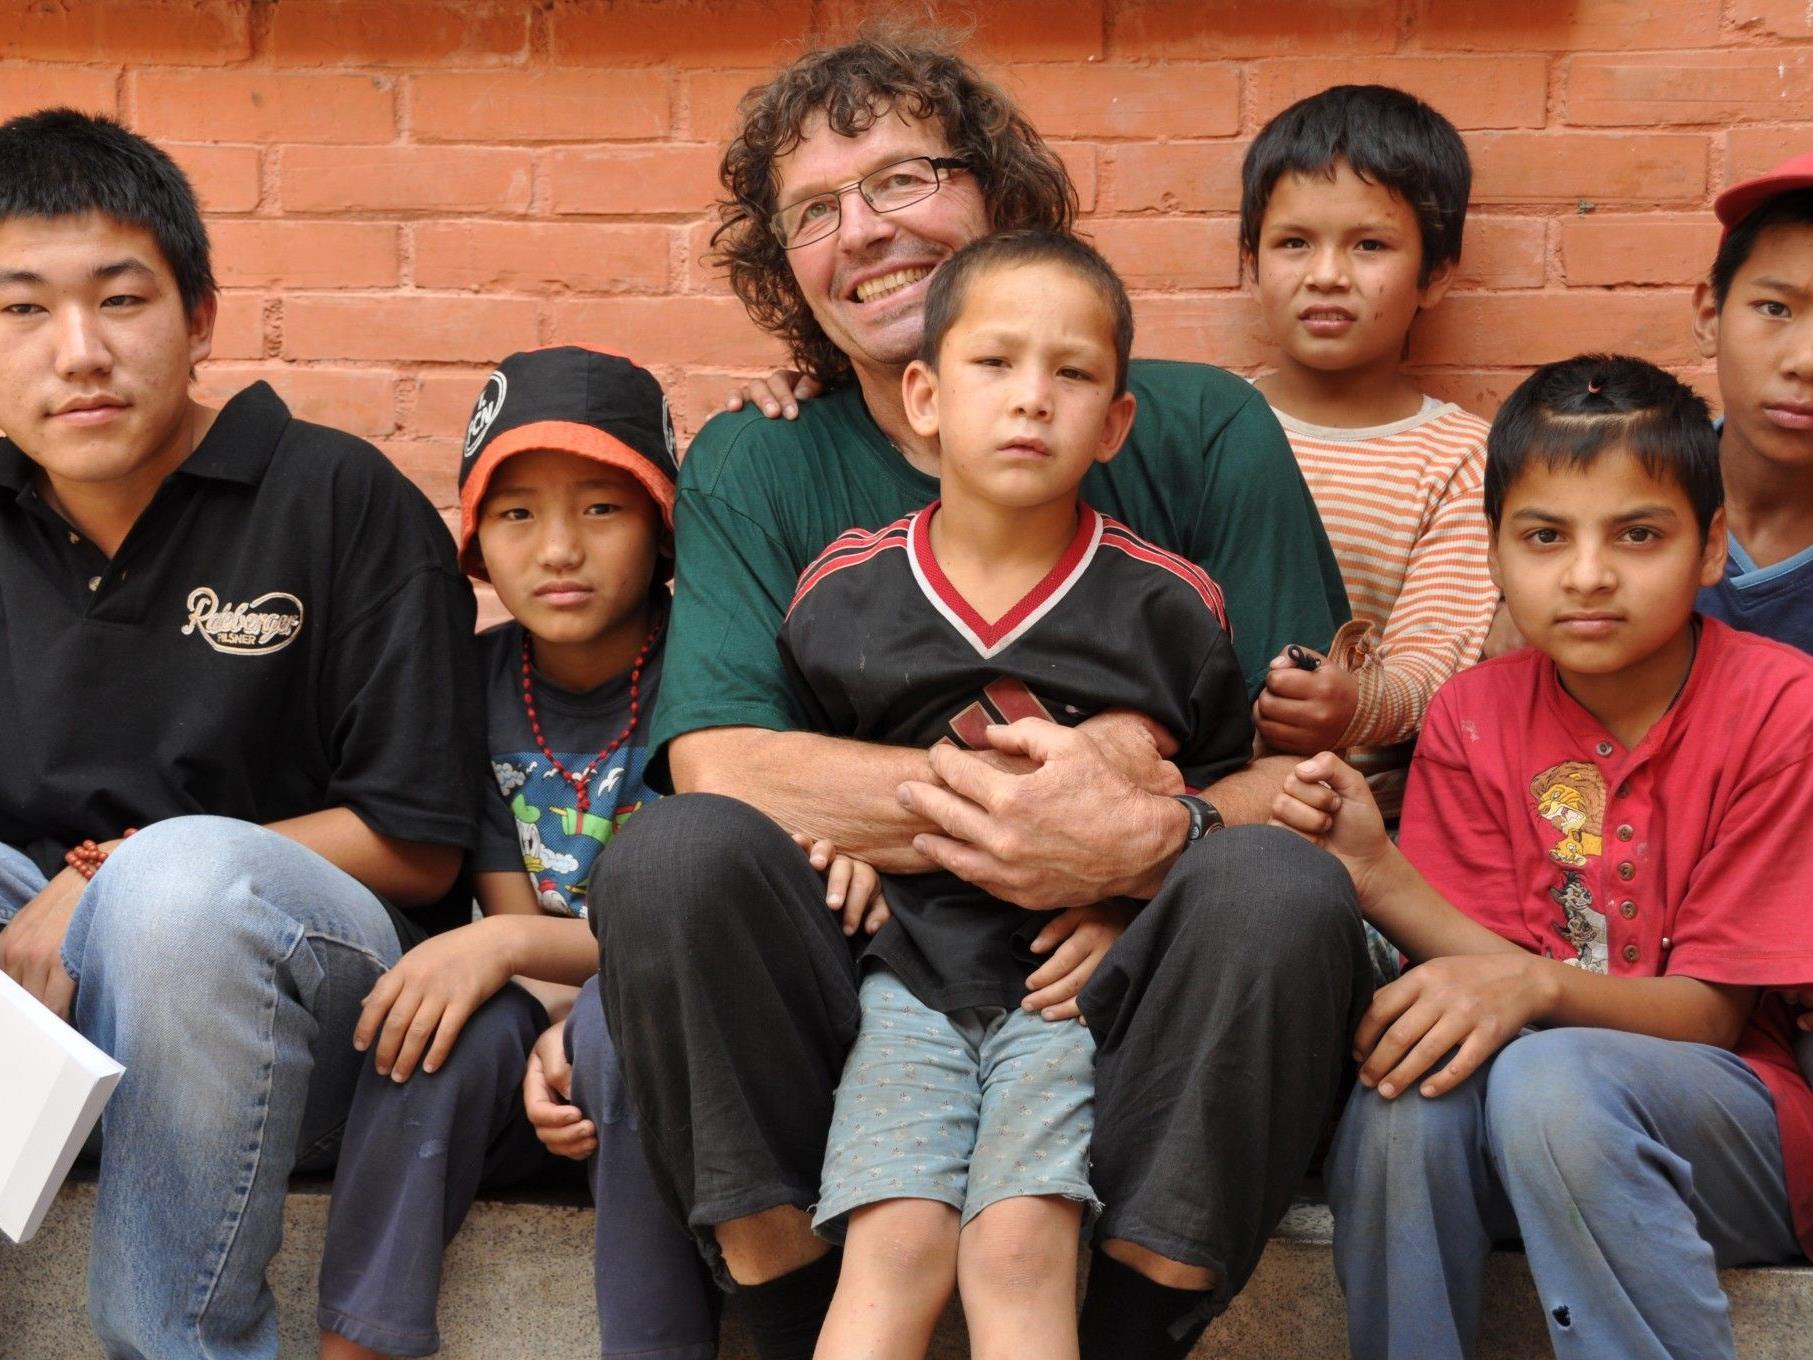 Hilfsaktion Go for Nepal hat der Frastanzer Franz Lutz ins Leben gerufen.